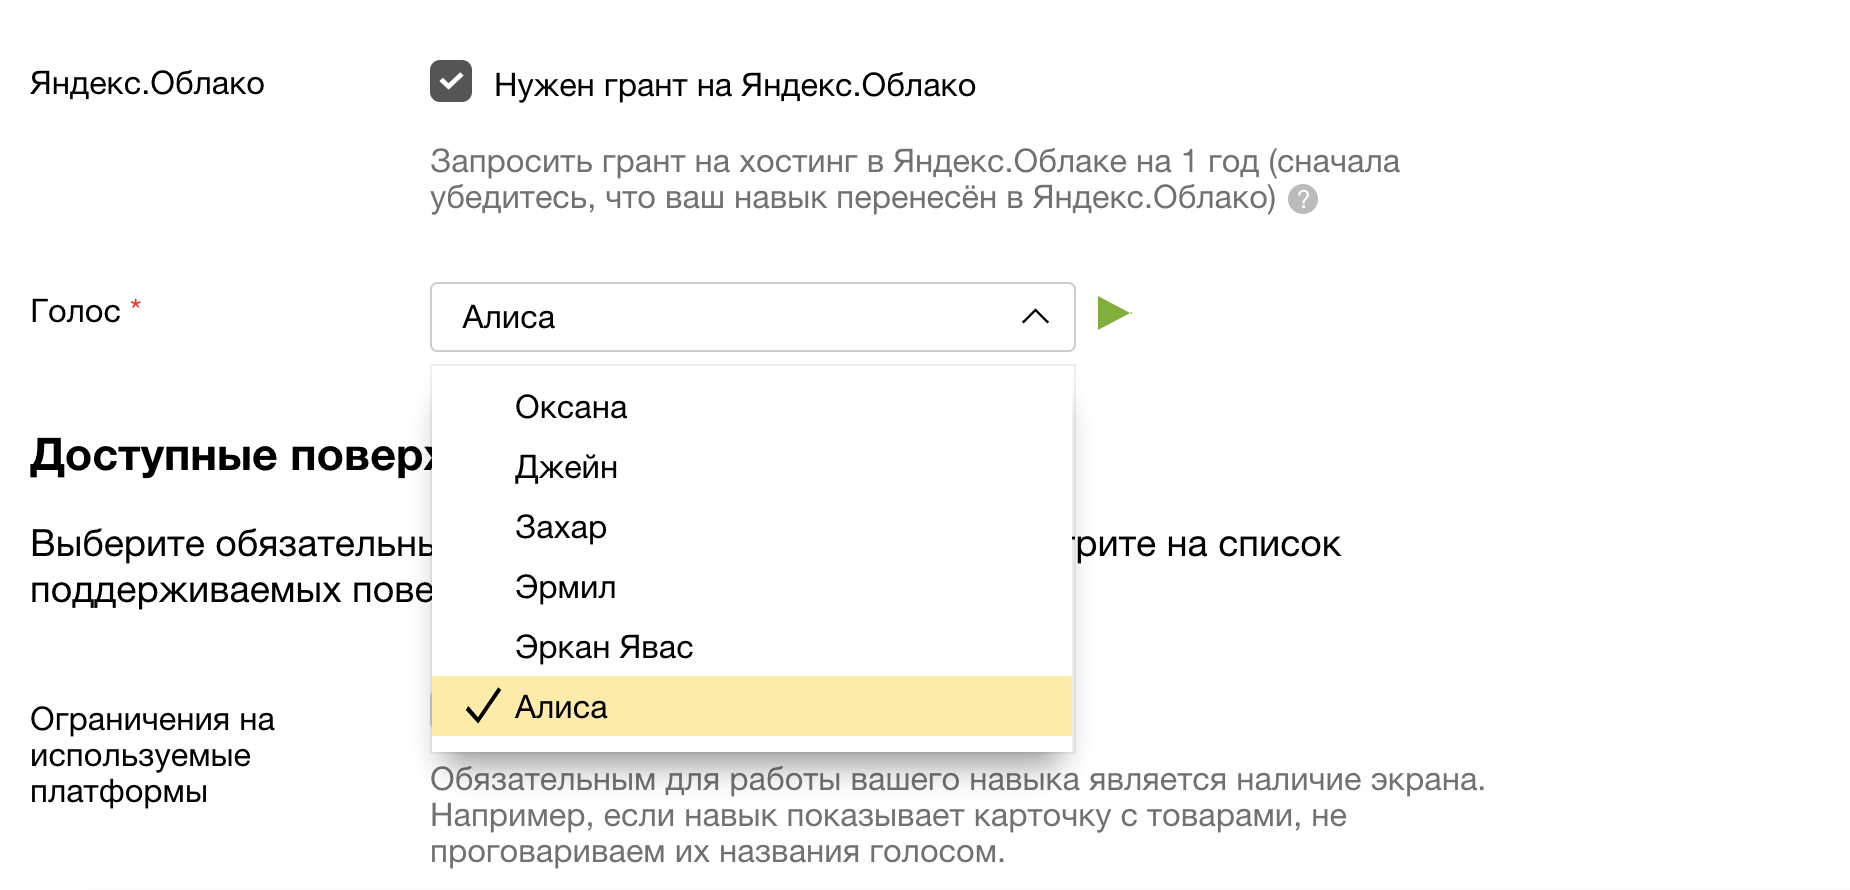 Яндекс: голос Алисы стал доступен в навыках